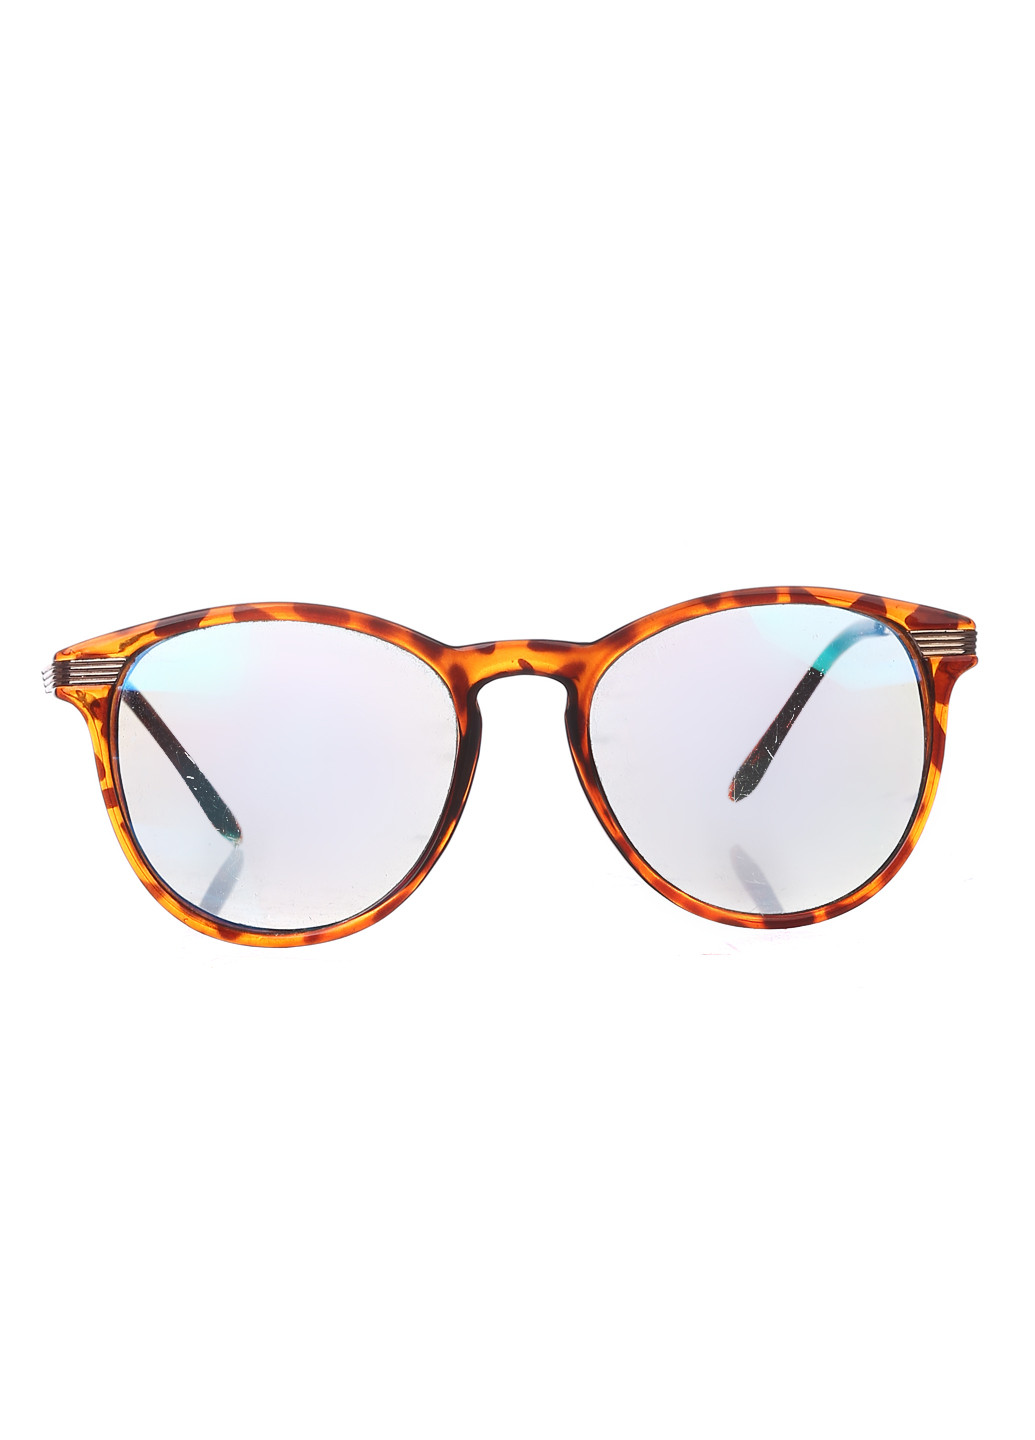 Солнцезащитные очки Bershka абстрактные коричневые